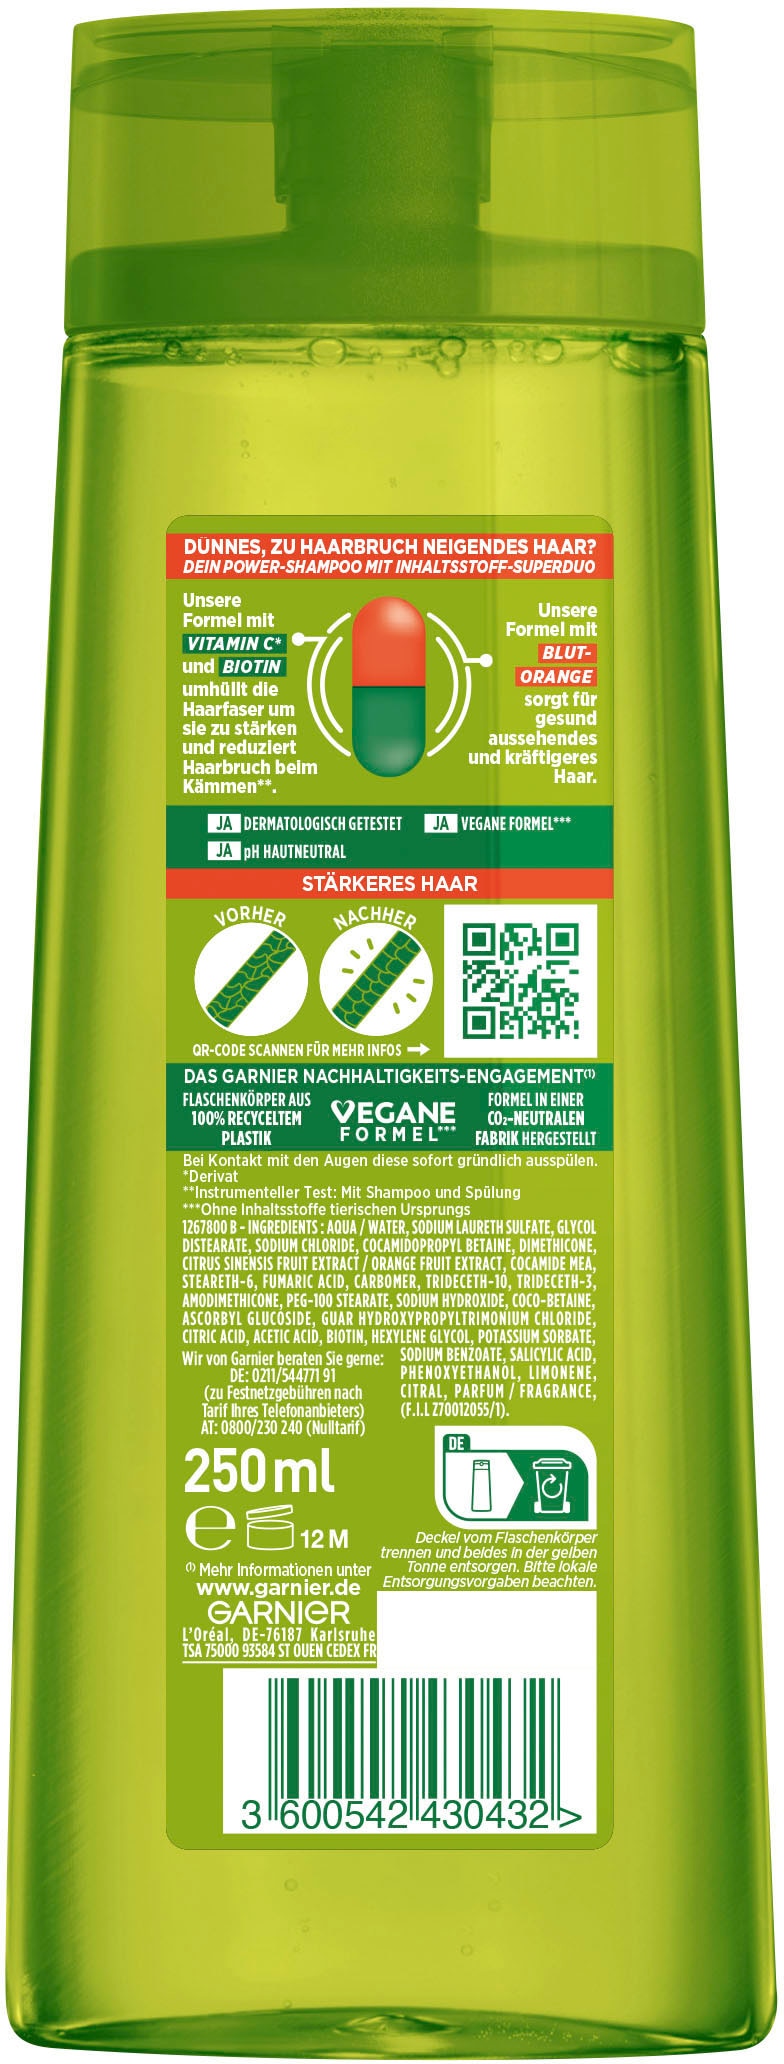 GARNIER Haarshampoo »Garnier Fructis Vitamine & online Shampoo« Kraft UNIVERSAL bei